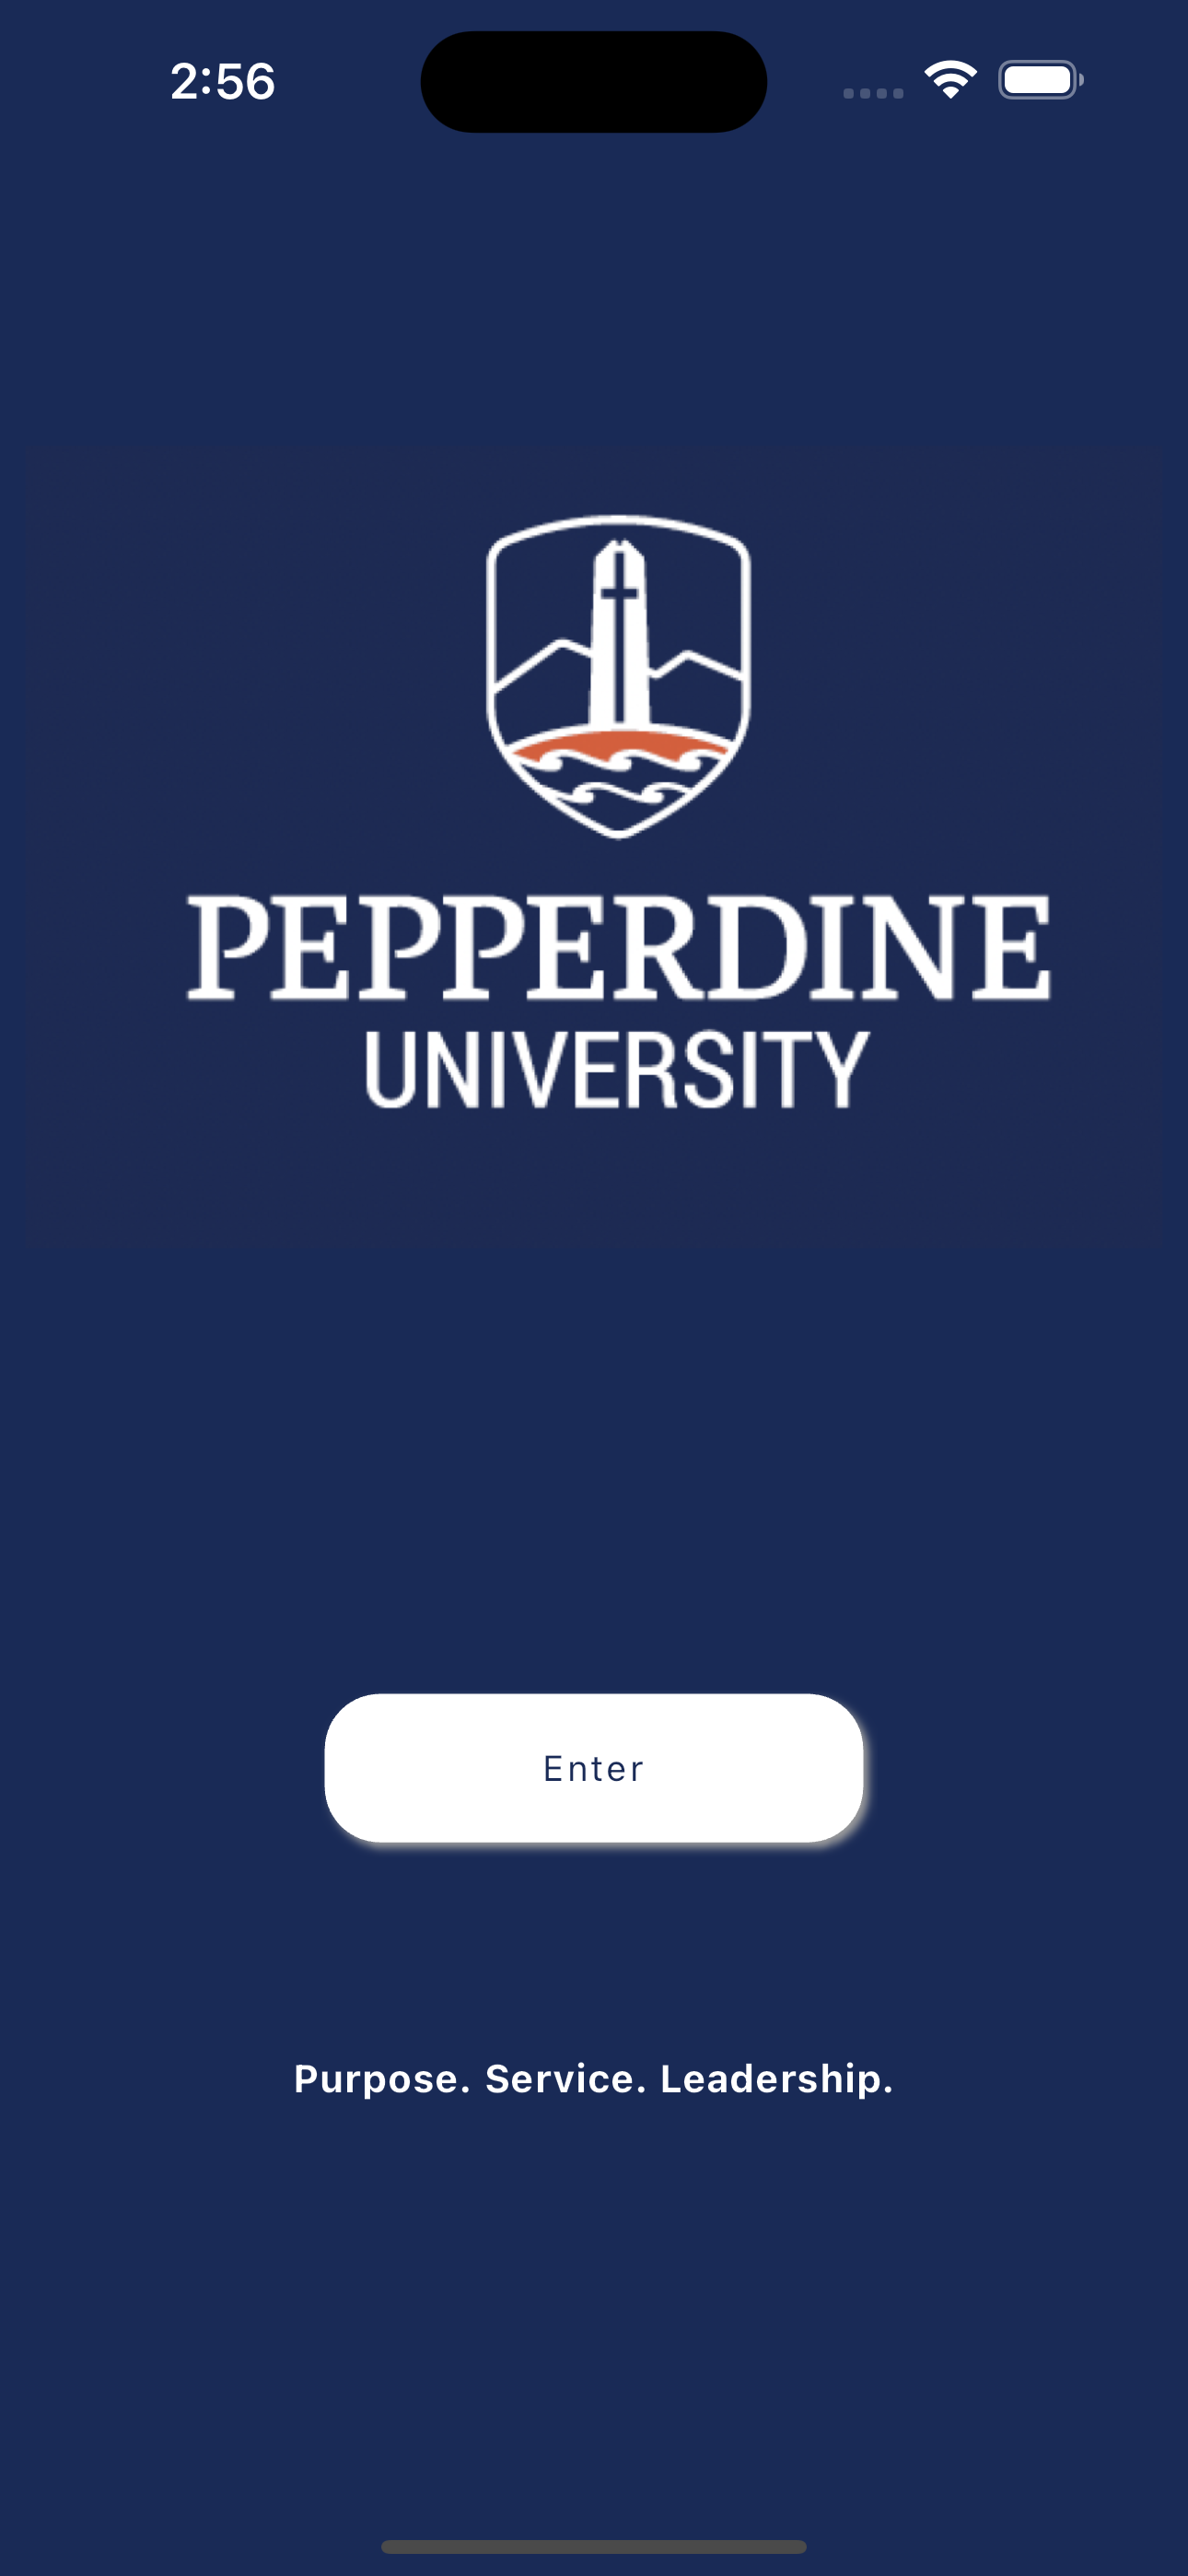 Pepperdine University Mobile App Splash Screen w/ New Branding